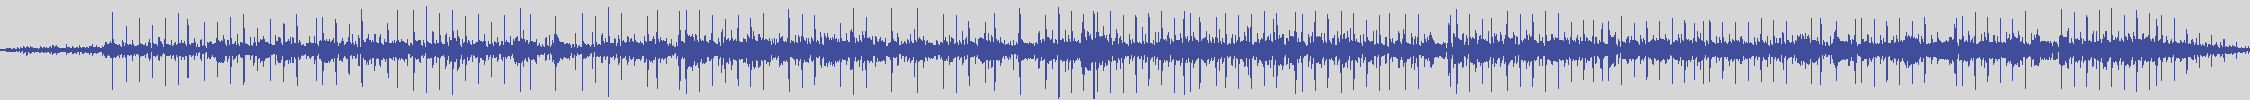 digiphonic_records [DPR013] Little Tony - Facciamolo Una Volta Di Più [Original Mix] audio wave form